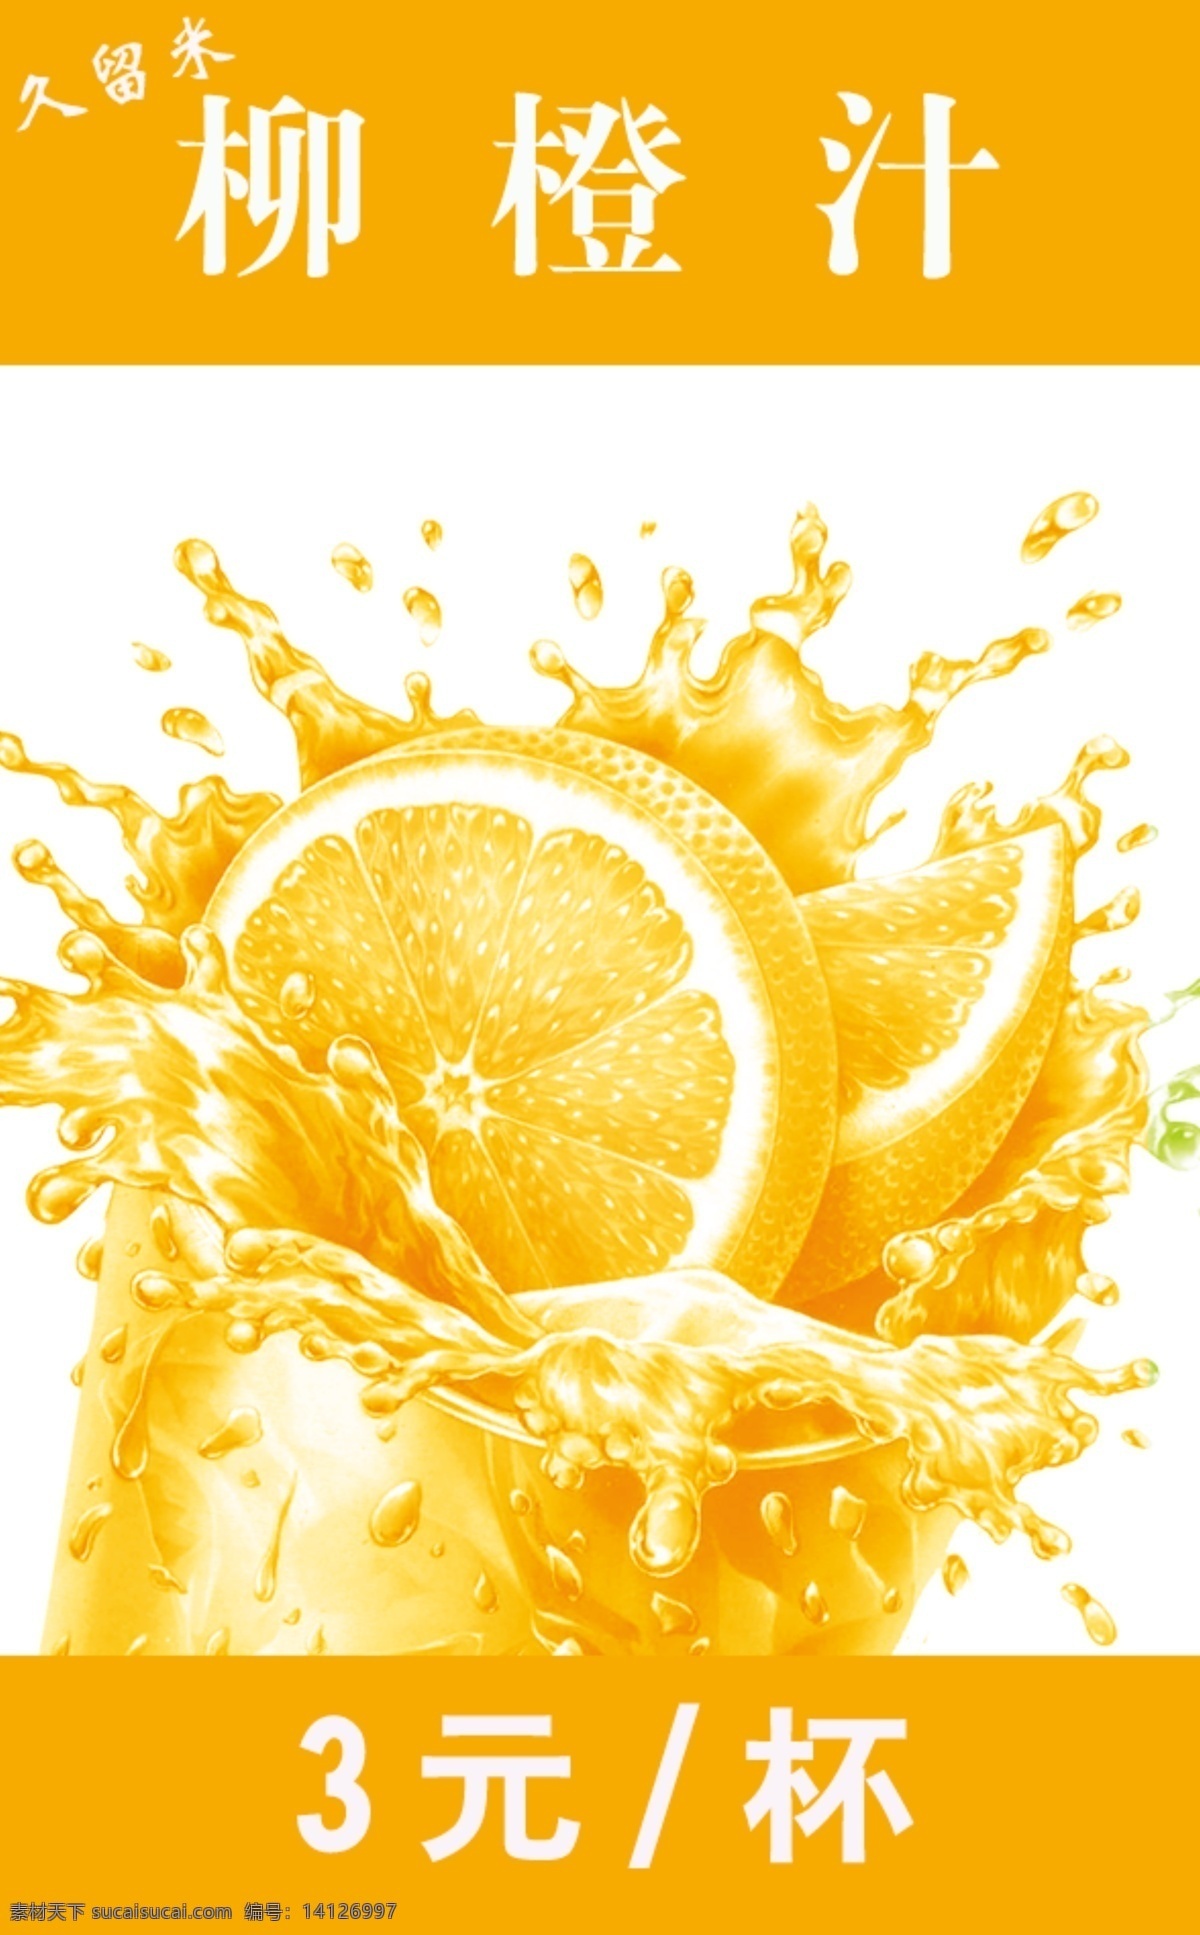 广告设计模板 果汁 海报psd 柳橙汁 饮料 源文件 柳 橙汁 模板下载 海报 psd源文件 餐饮素材